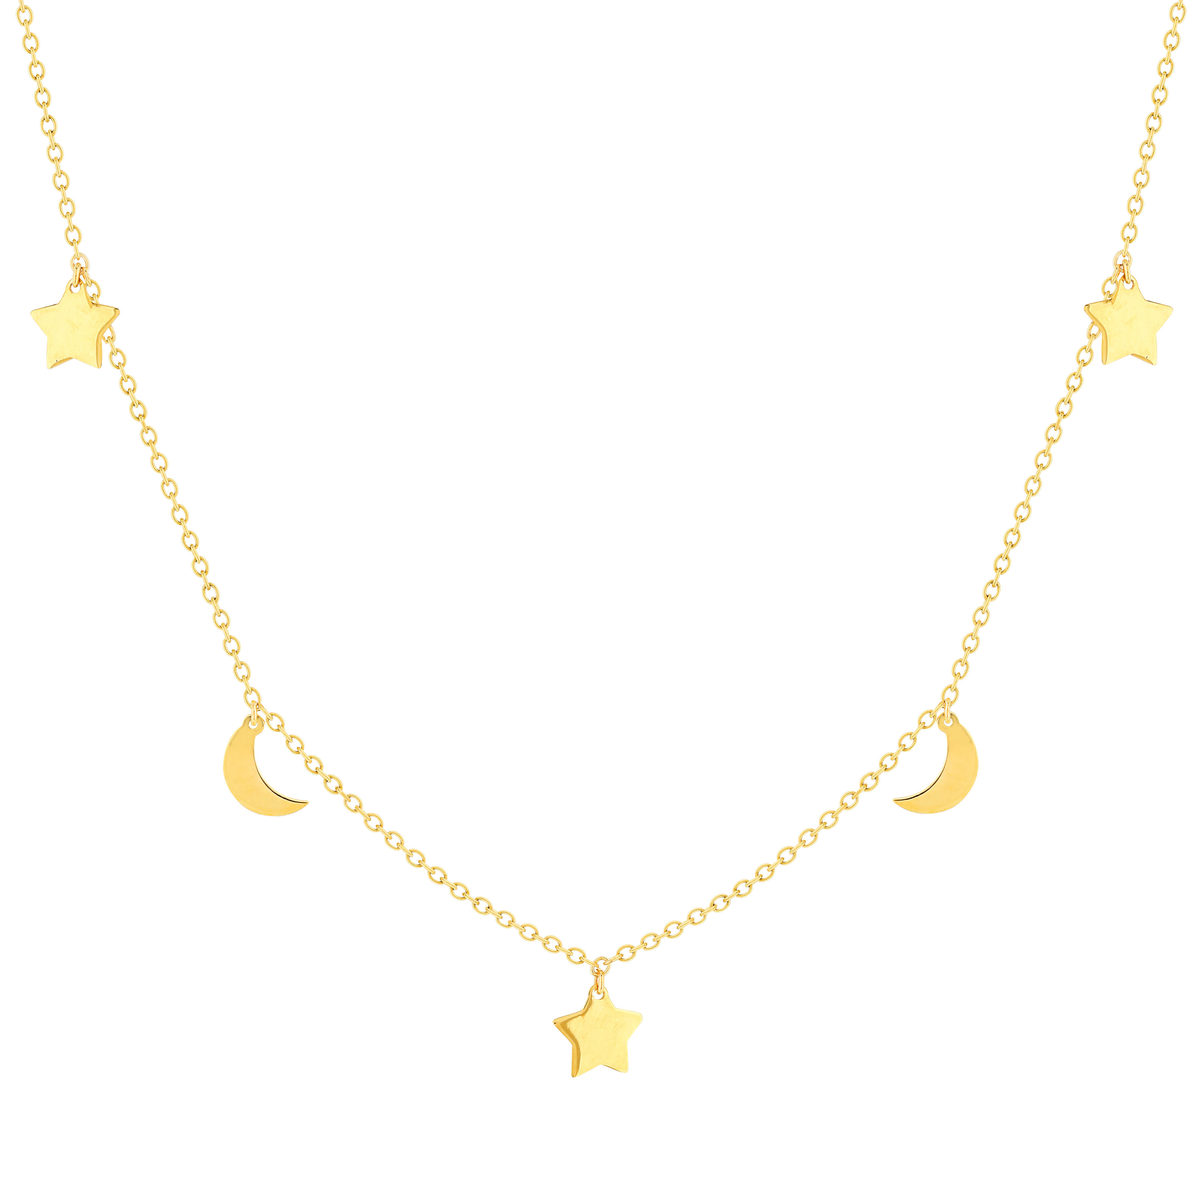 Collier or jaune 375 41 cm, motif pampille lune et étoile